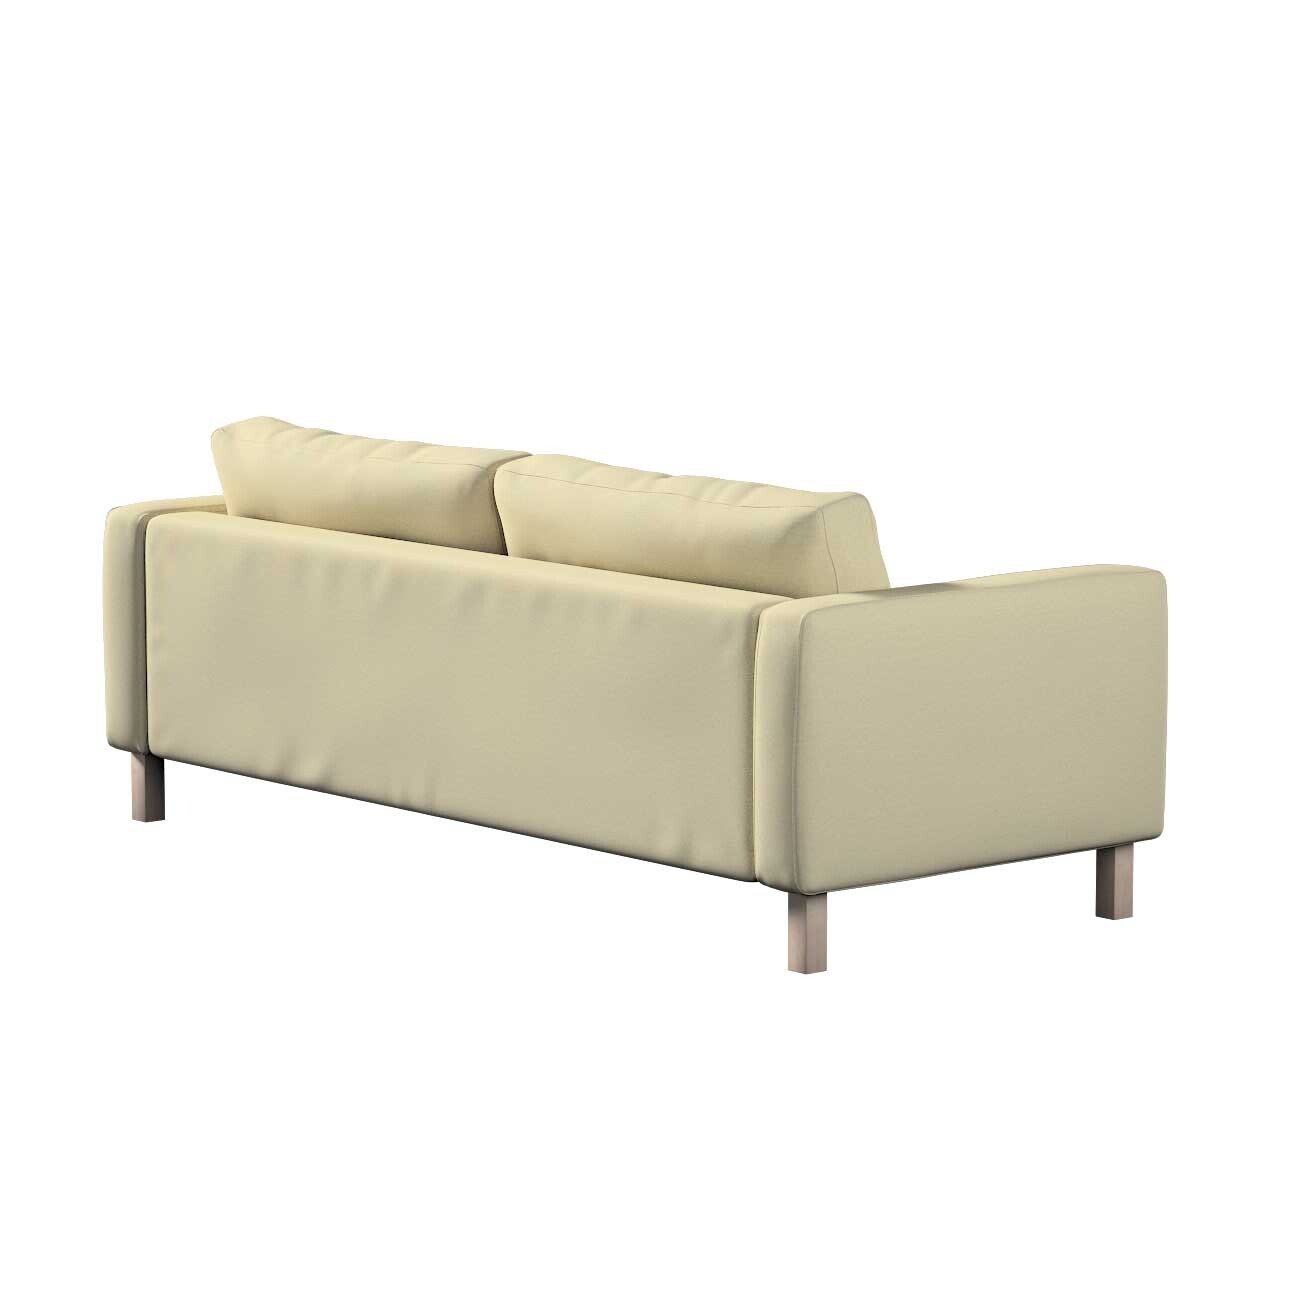 Bezug für Karlstad 3-Sitzer Sofa nicht ausklappbar, kurz, ecru, Bezug für K günstig online kaufen